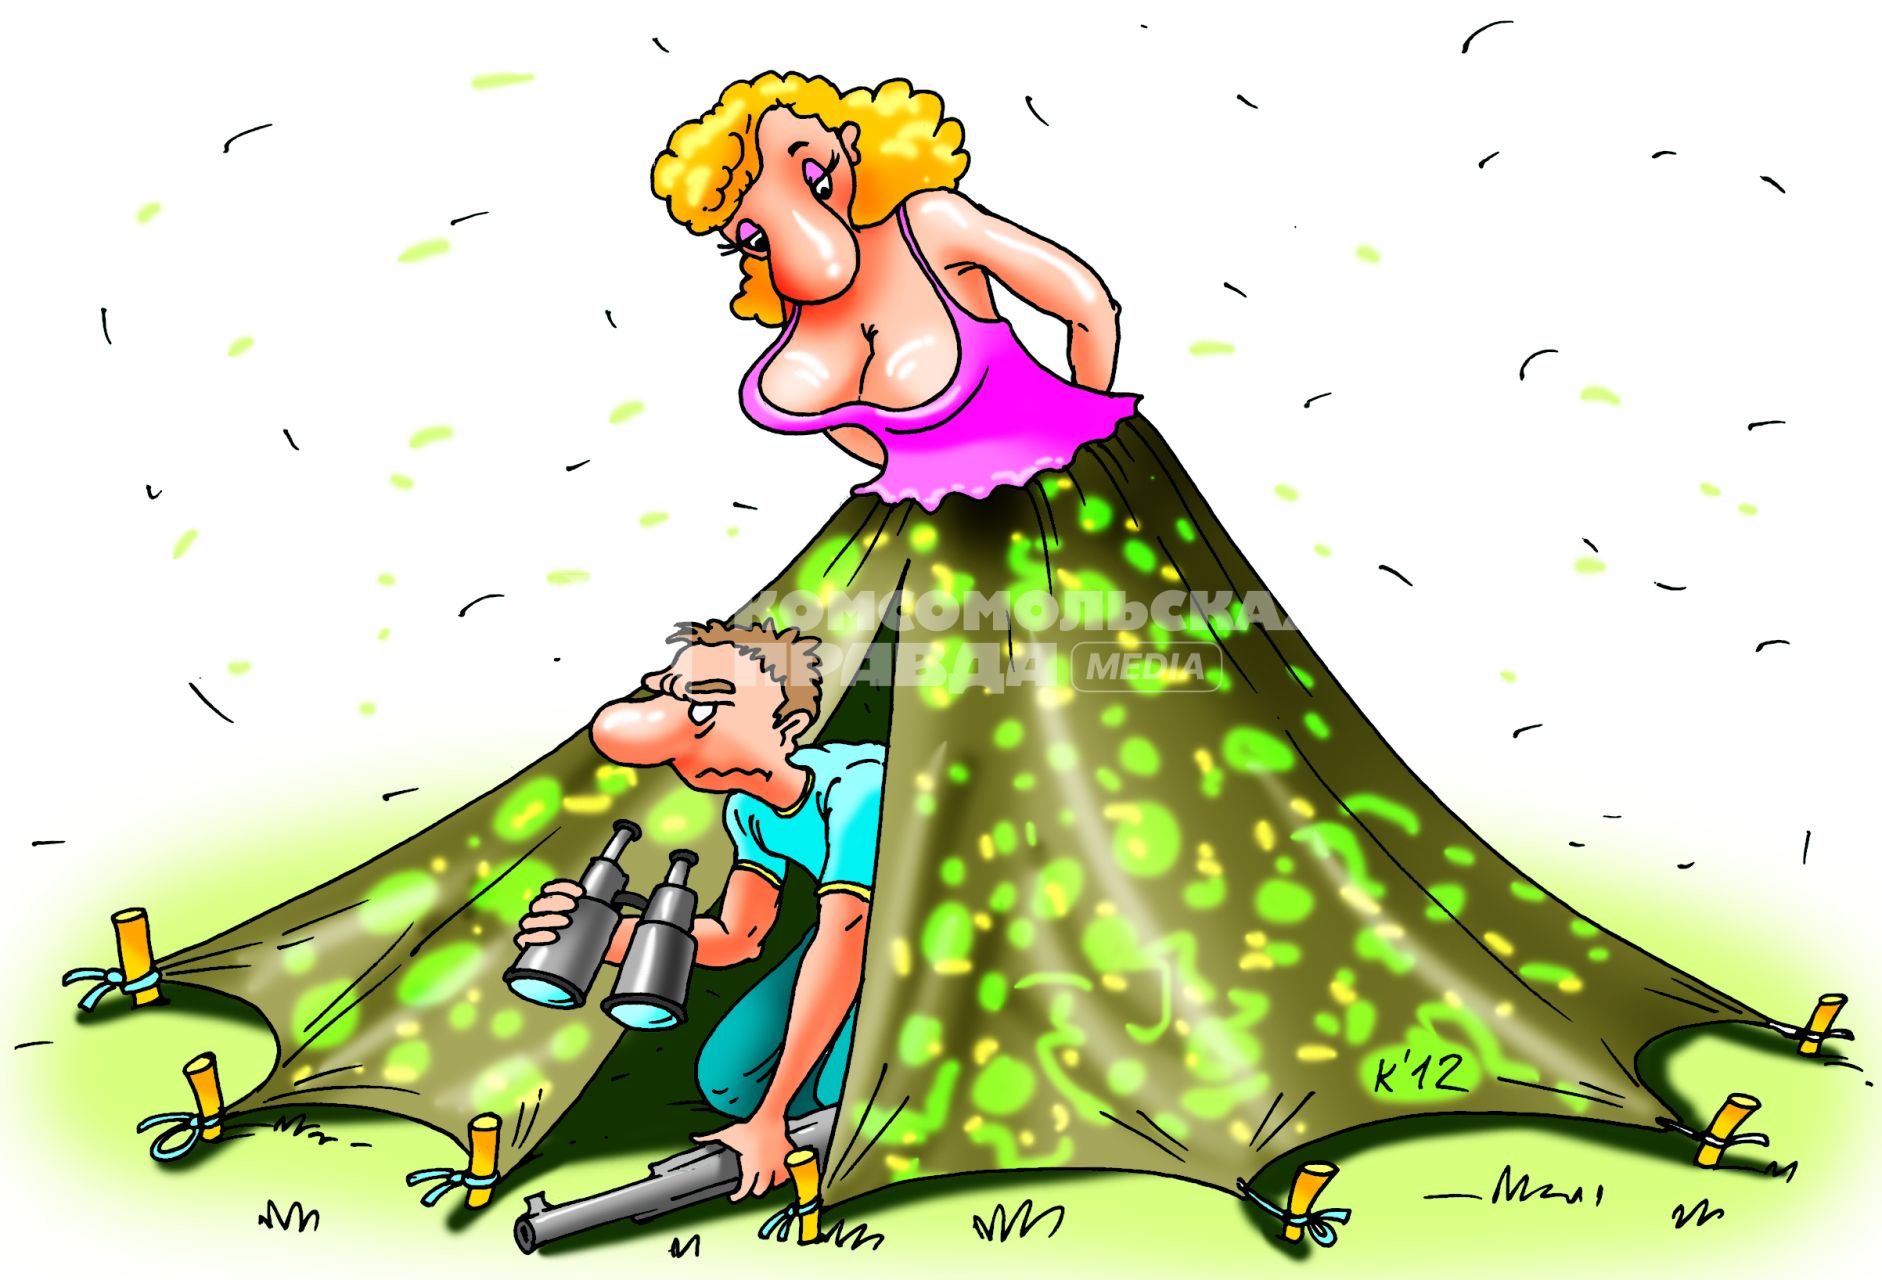 Карикатура на тему отношений мужчины и женщины.